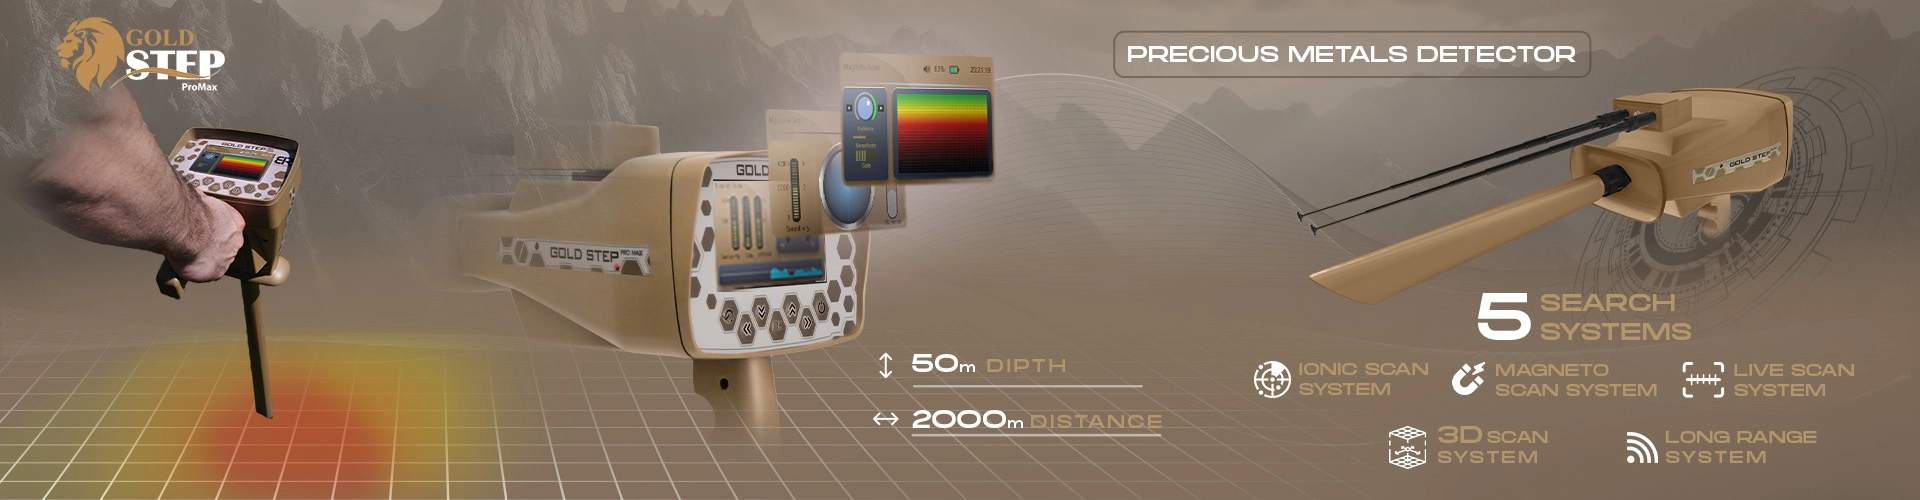 BR Gold Step Pro Max - Детектор металла и золота